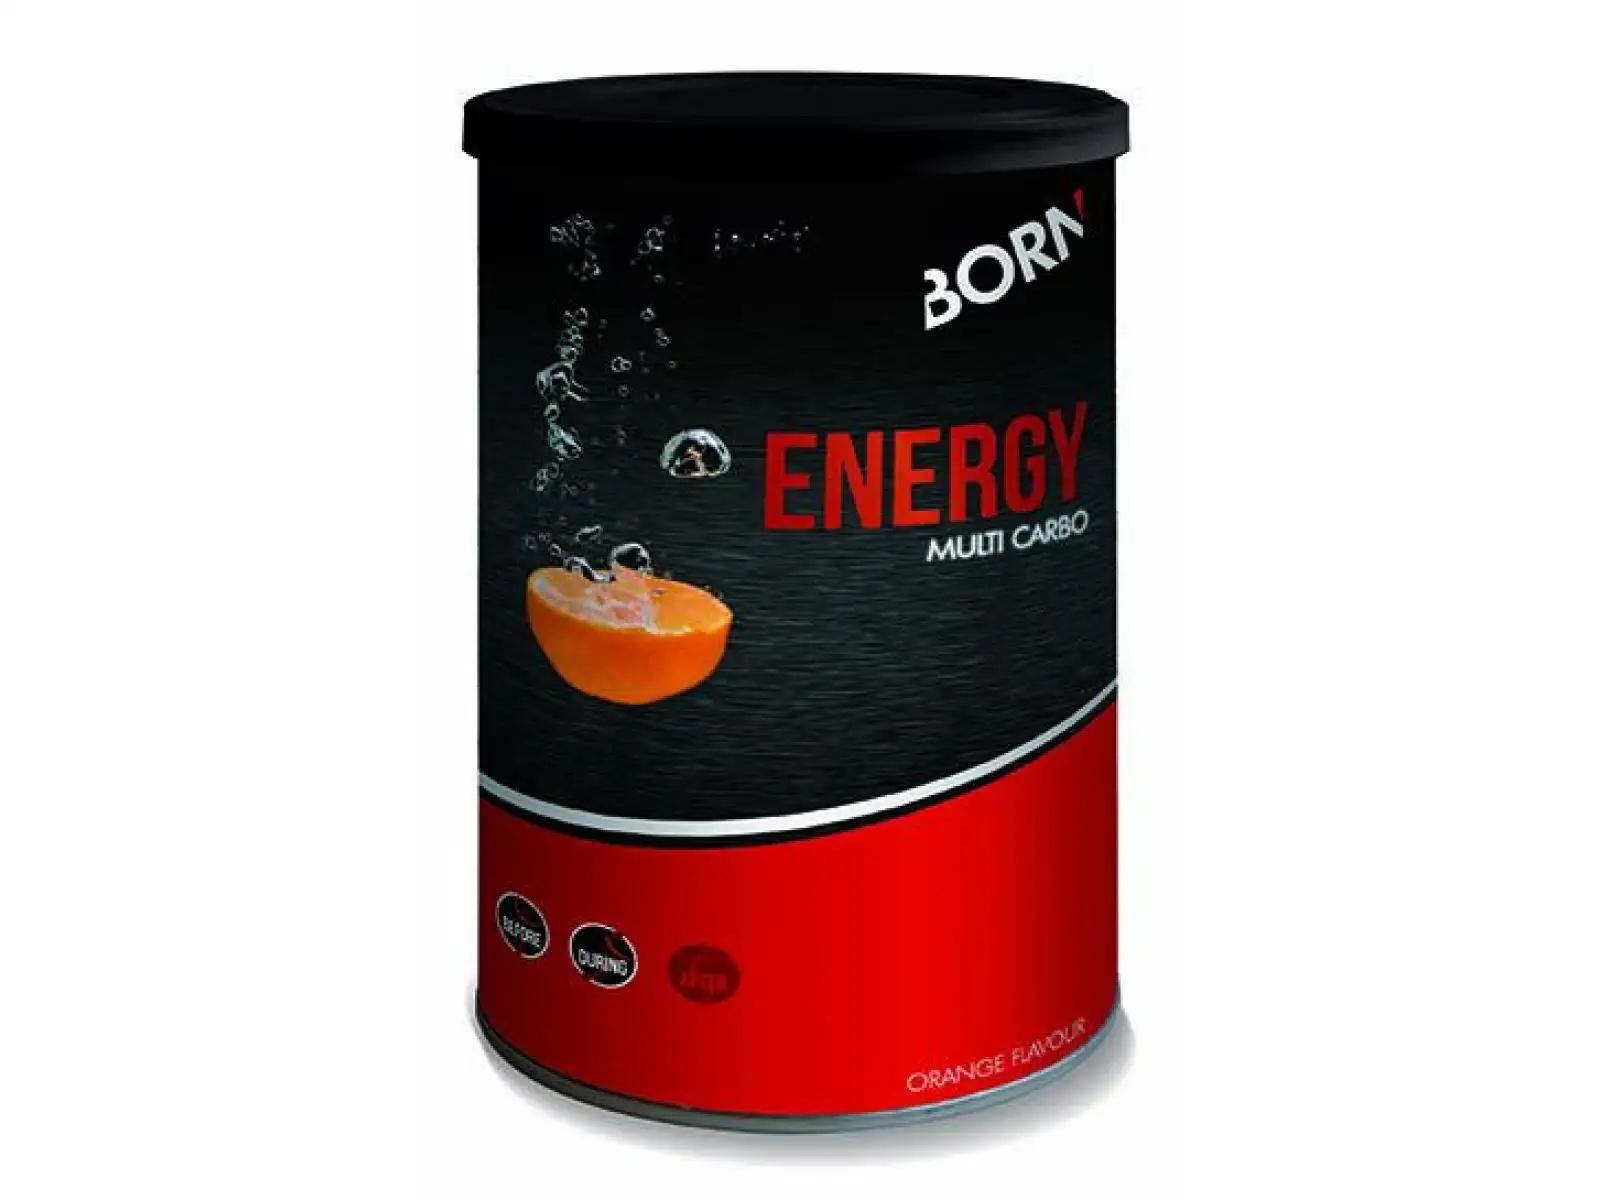 Born Energy Multi Carbo energetický nápoj 540g